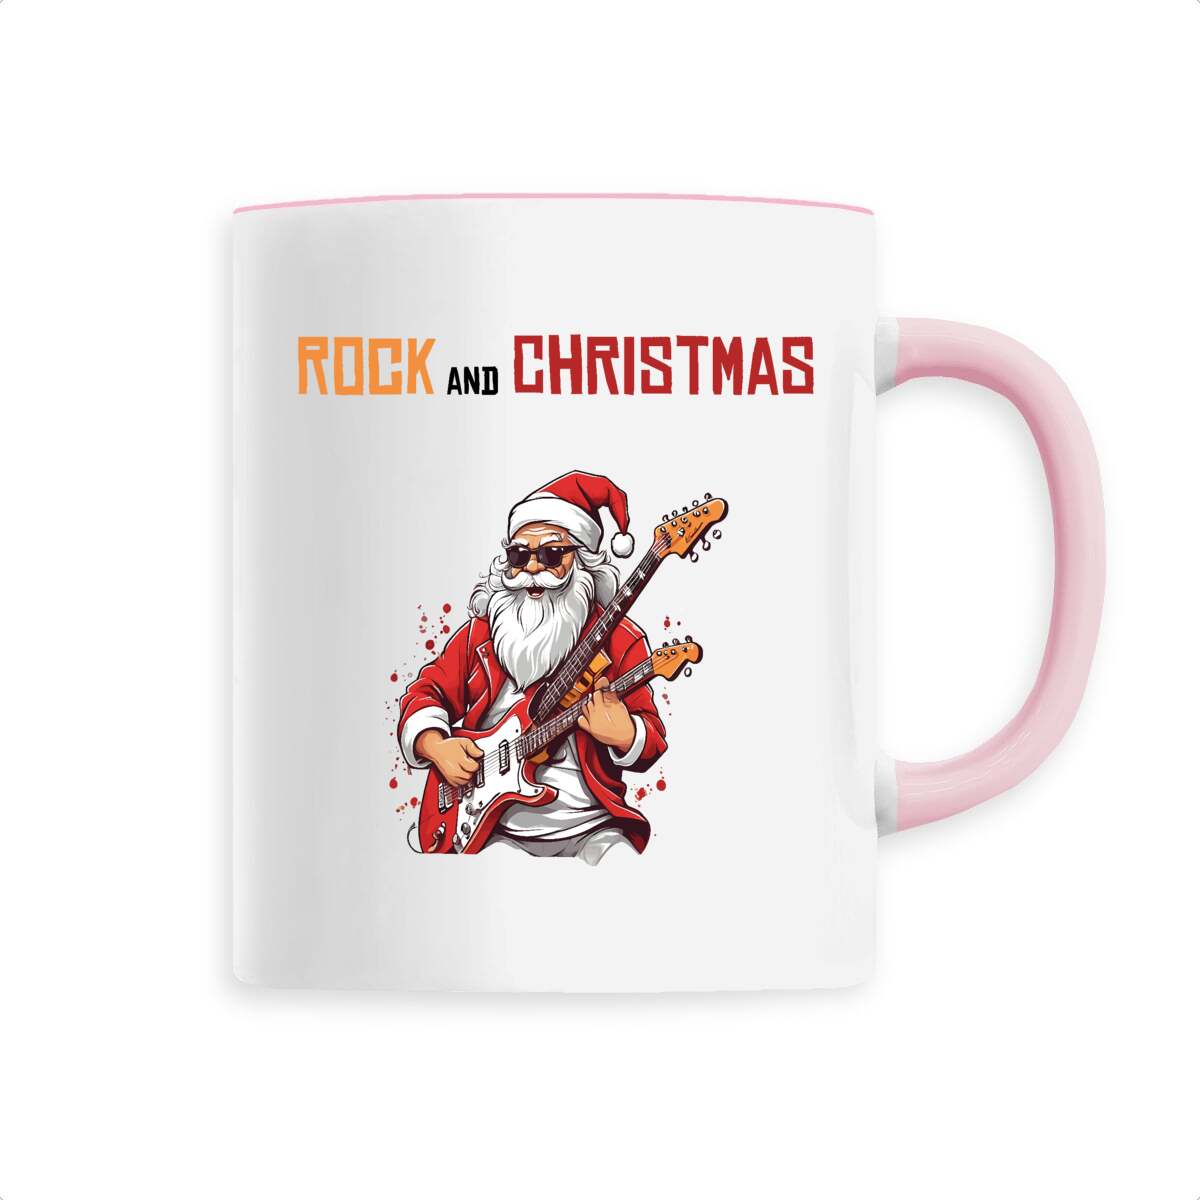 Mug rock and christmas